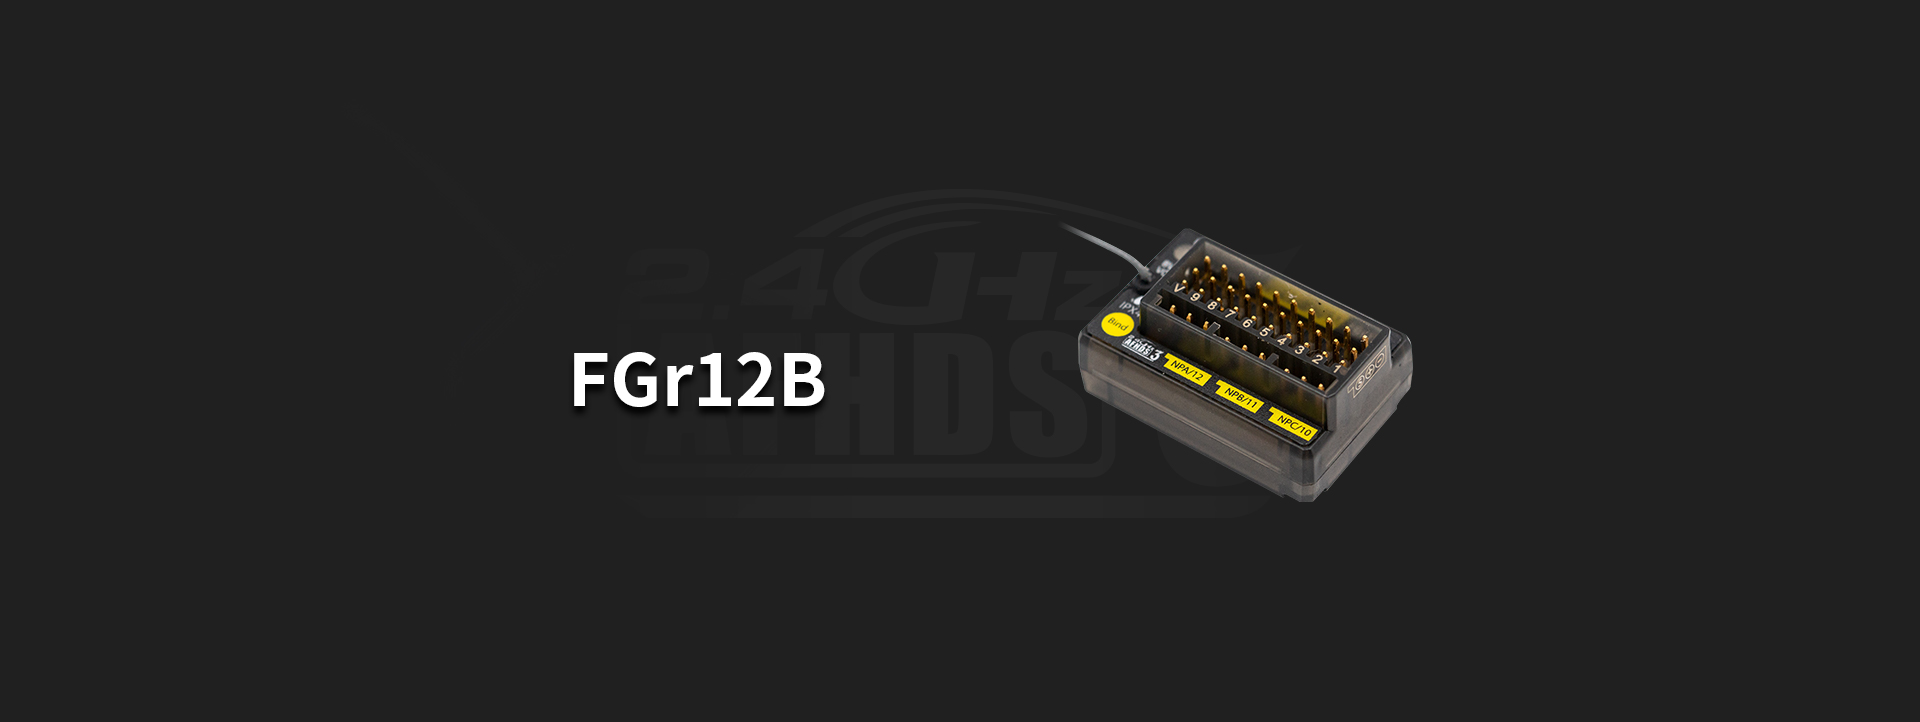 FGr12B三代协议接收机